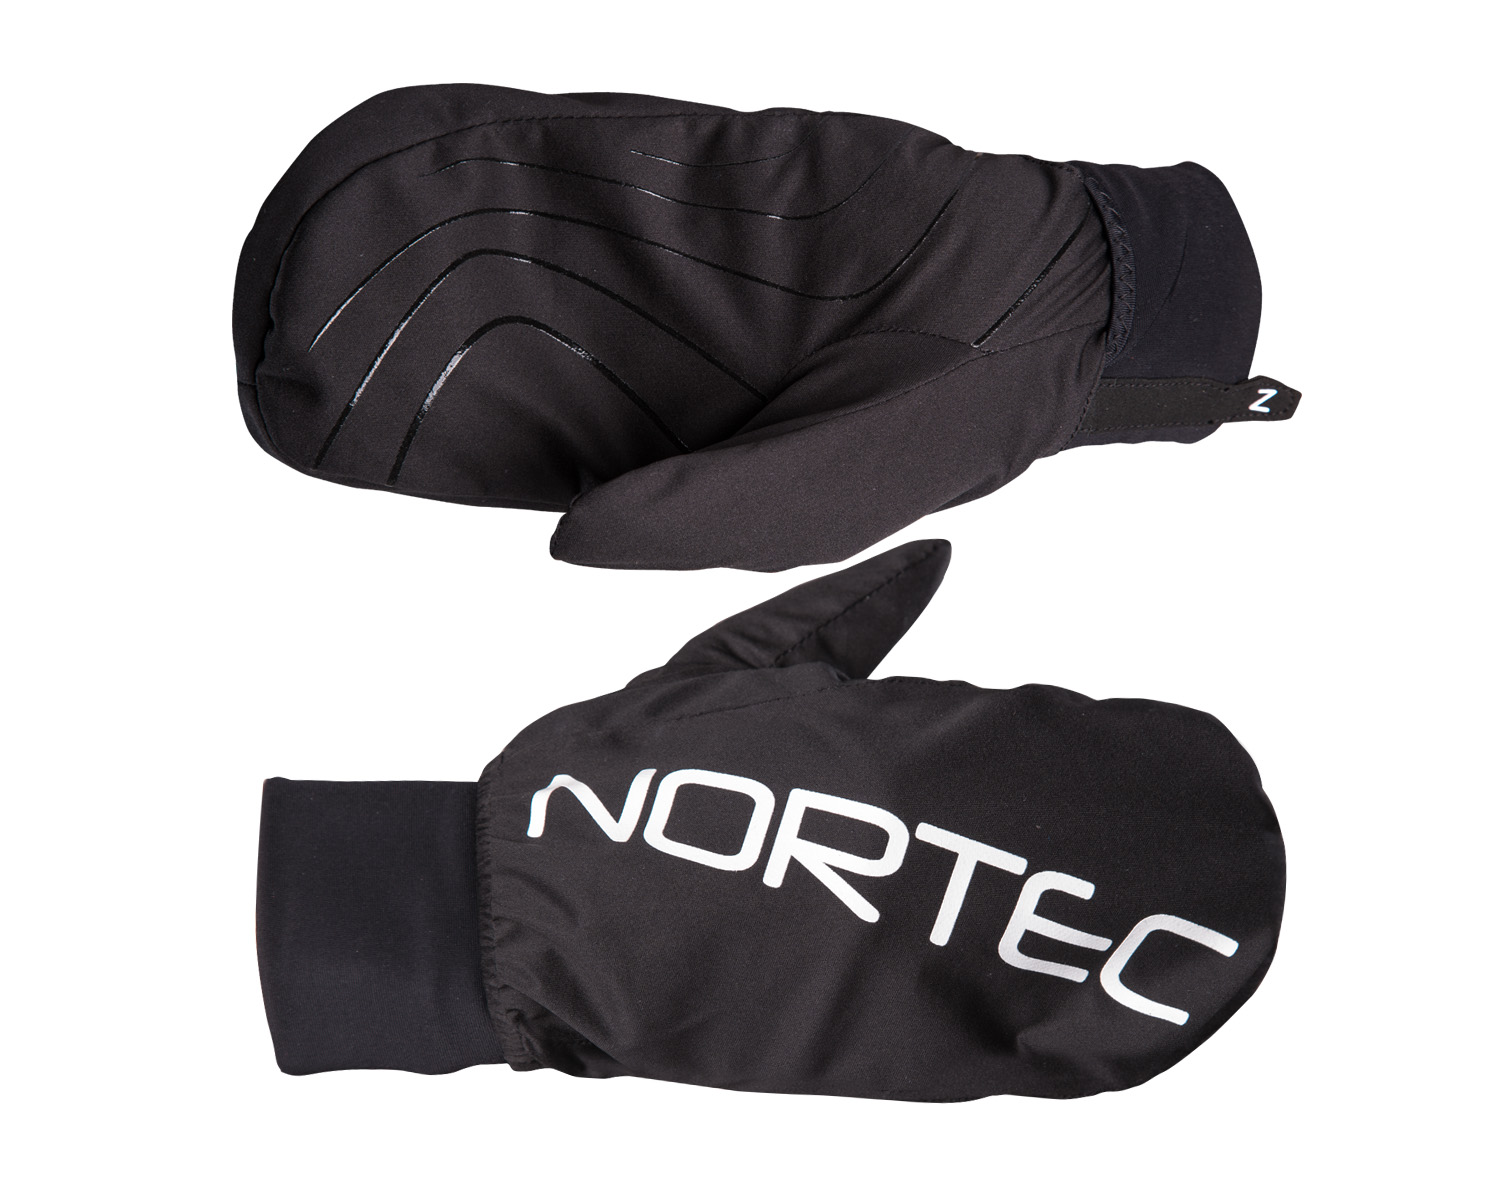 Перчатки Nortec Tech Black/White